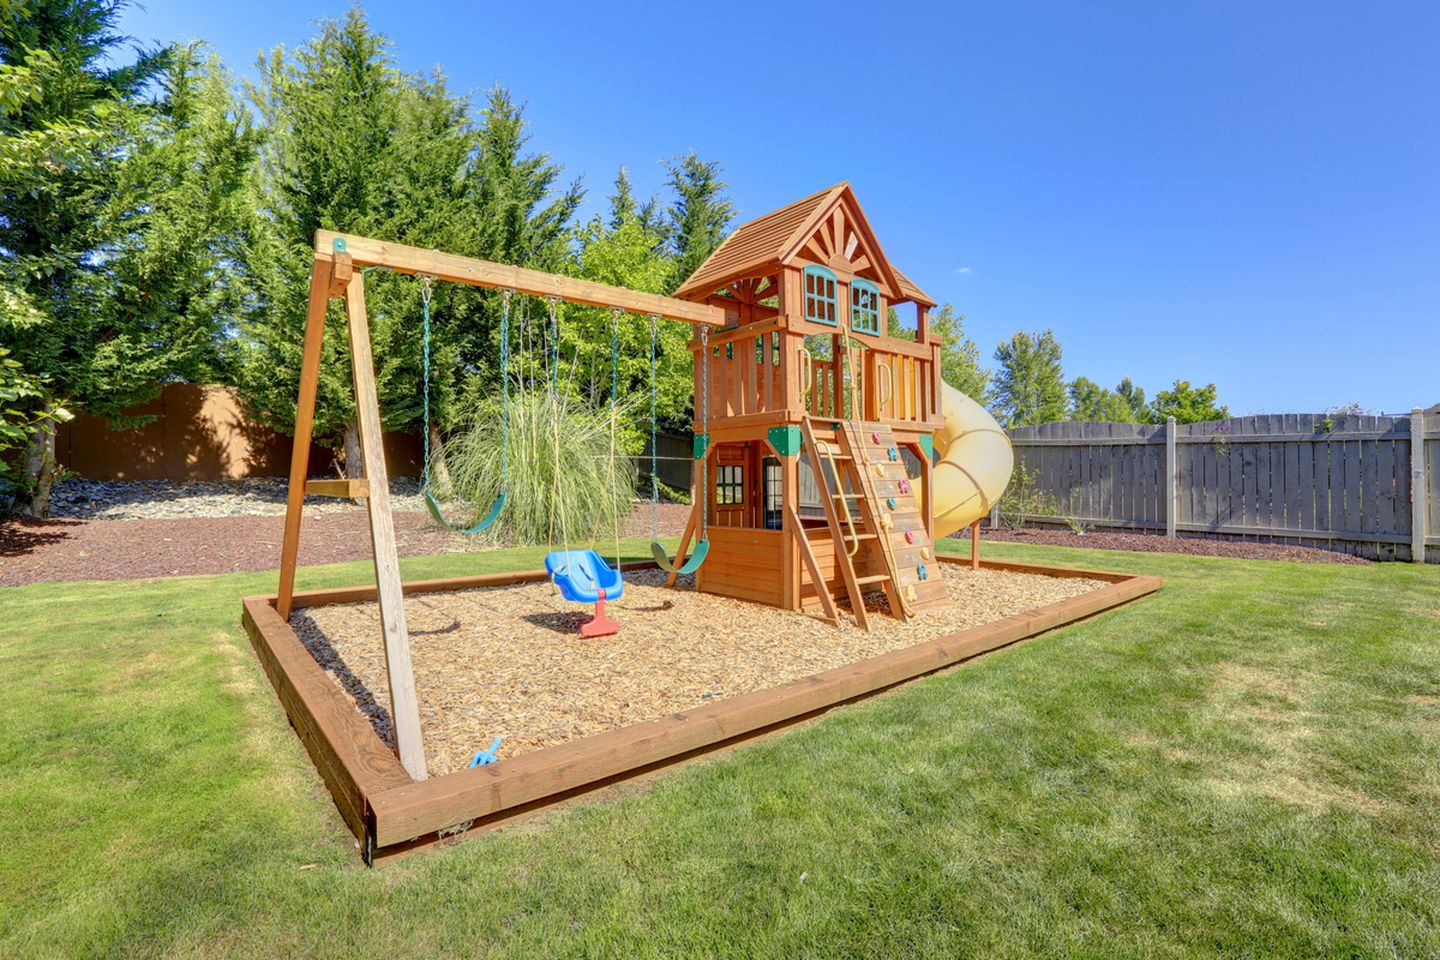 Desain taman belakang dengan playground bisa menjadi tempat wisata mini untuk anak-anak.